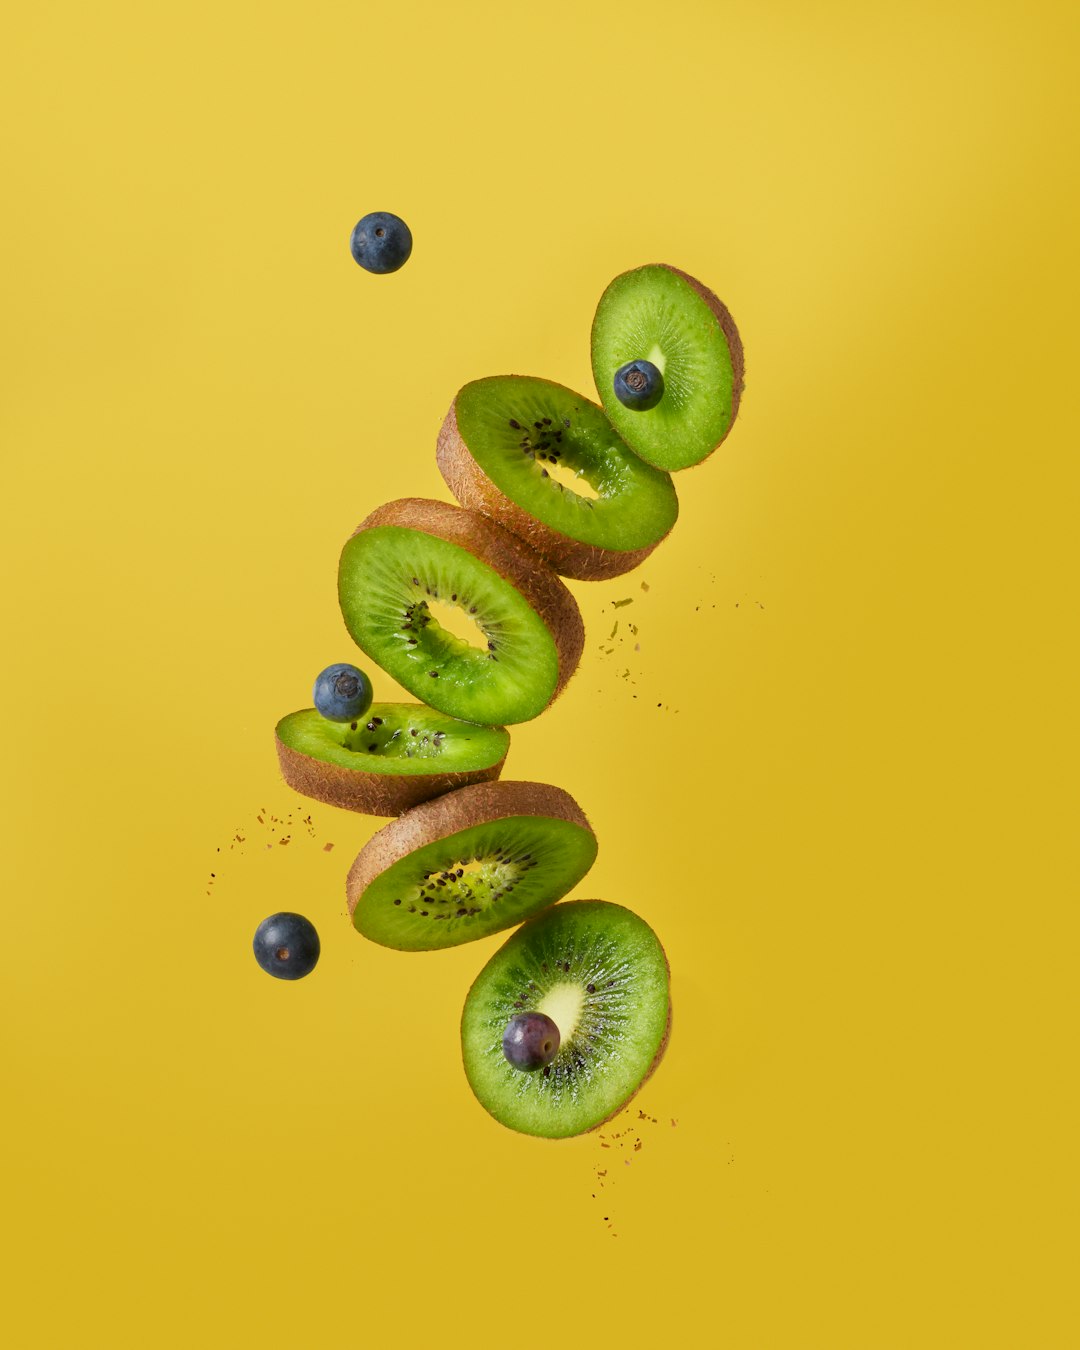 Varo Fruits's image